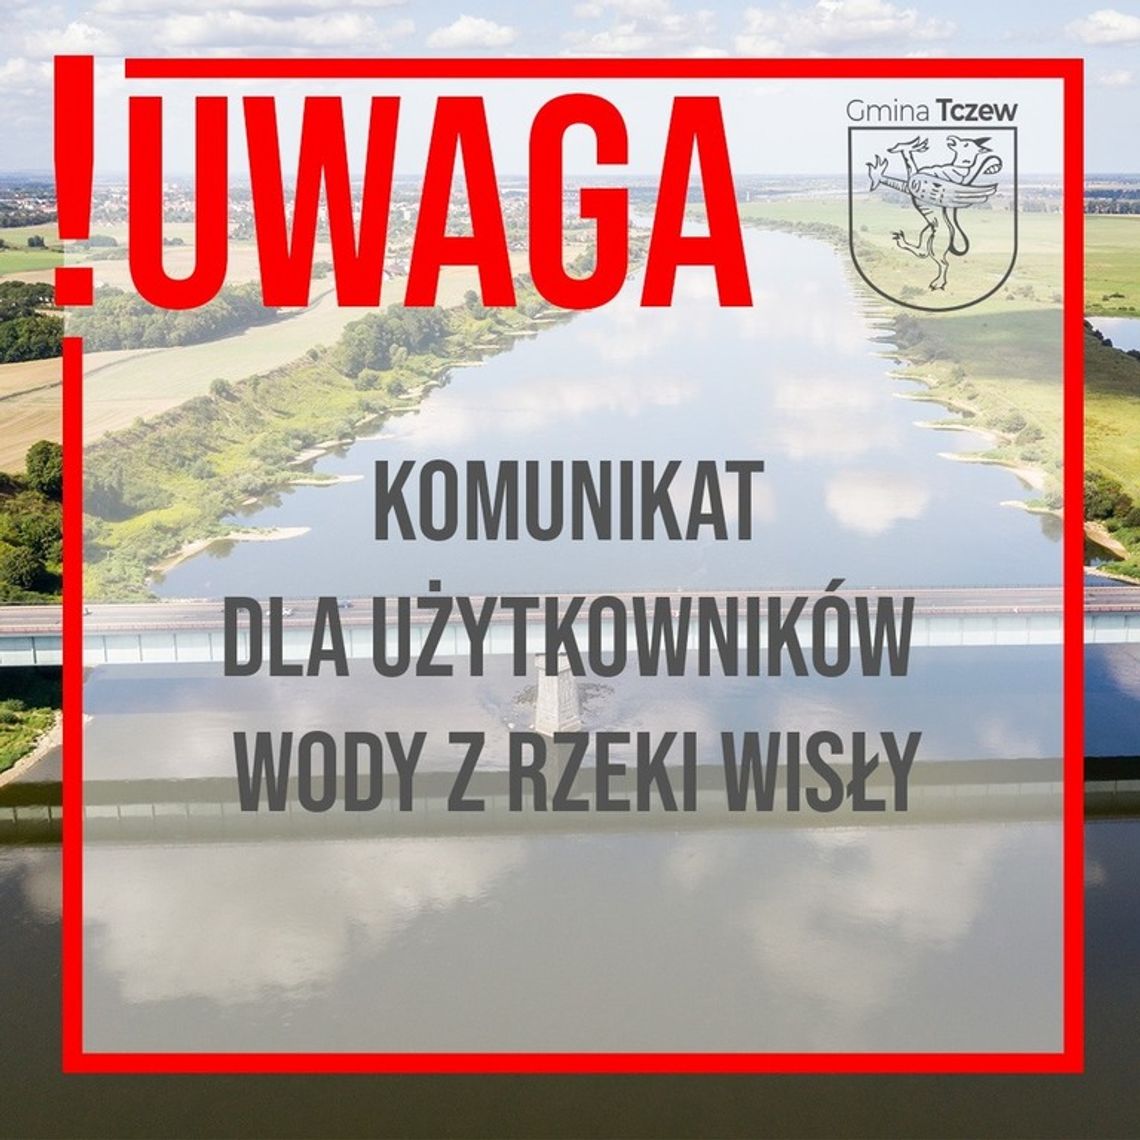 UWAGA!!!- Komunikat w sprawie użytkowania wody z rzeki Wisły